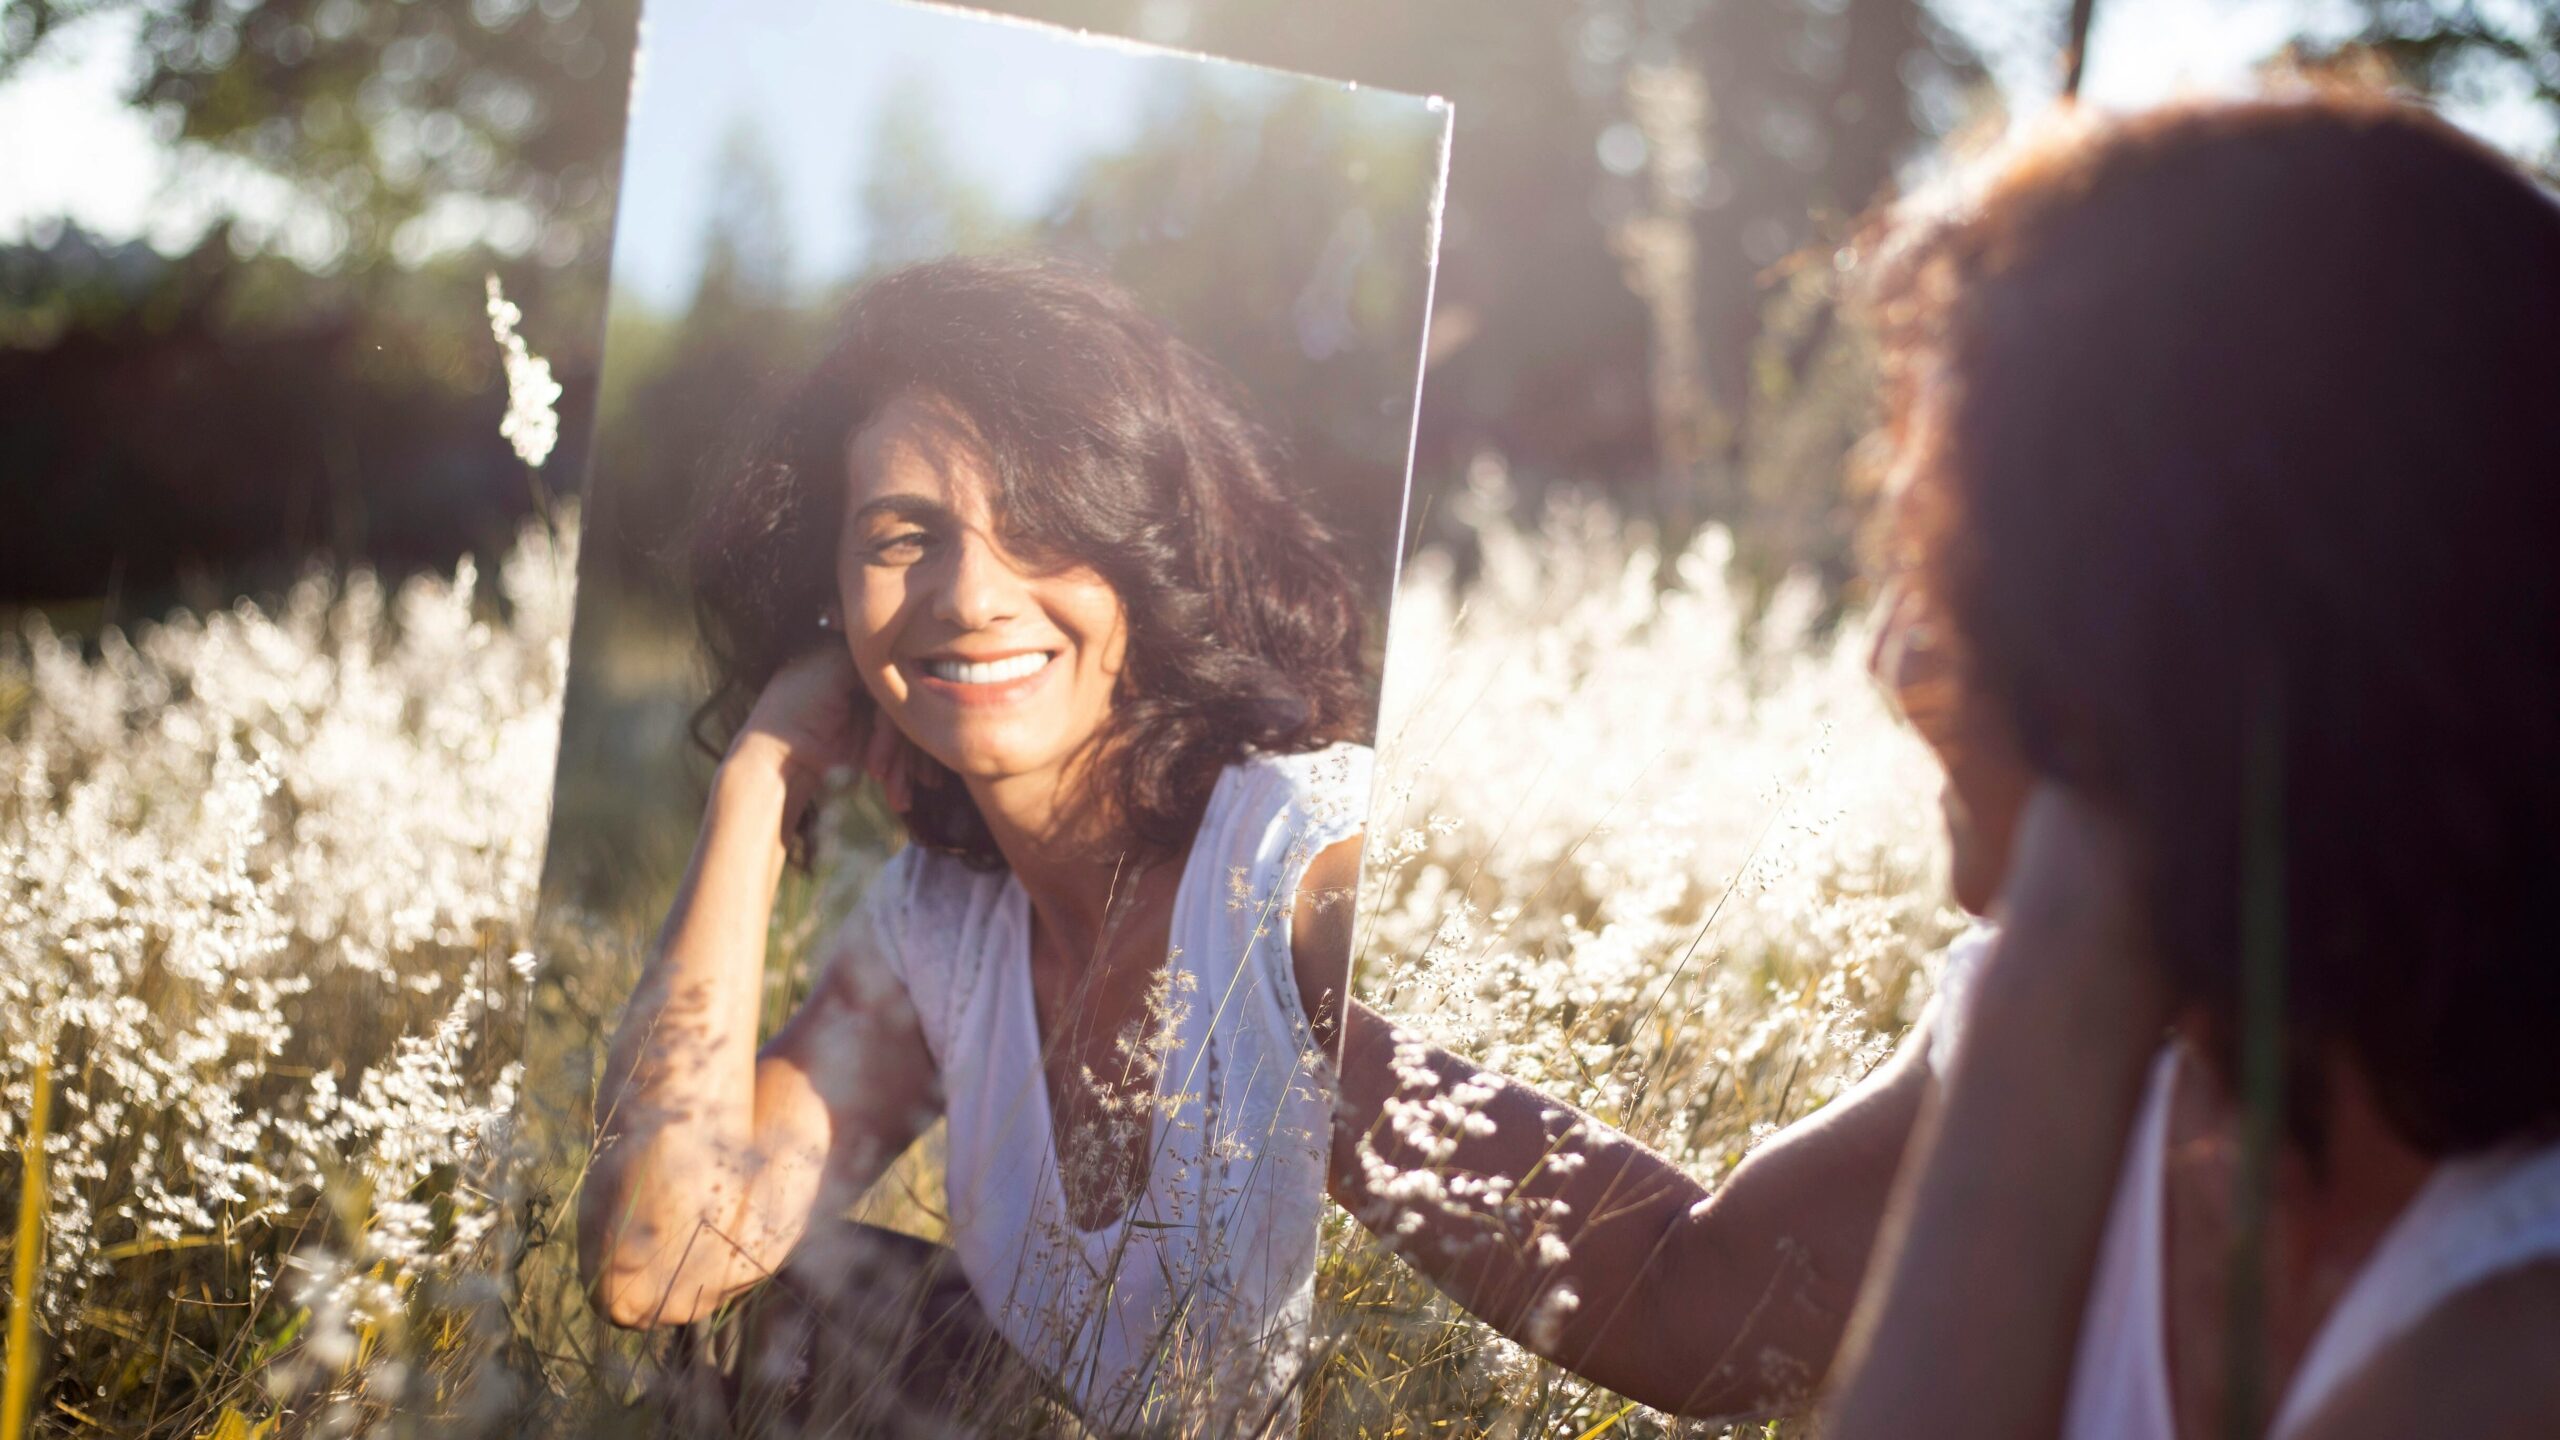 Frau praktiziert positive Selbstgespräche vor einem Spiegel auf einer Wiese.